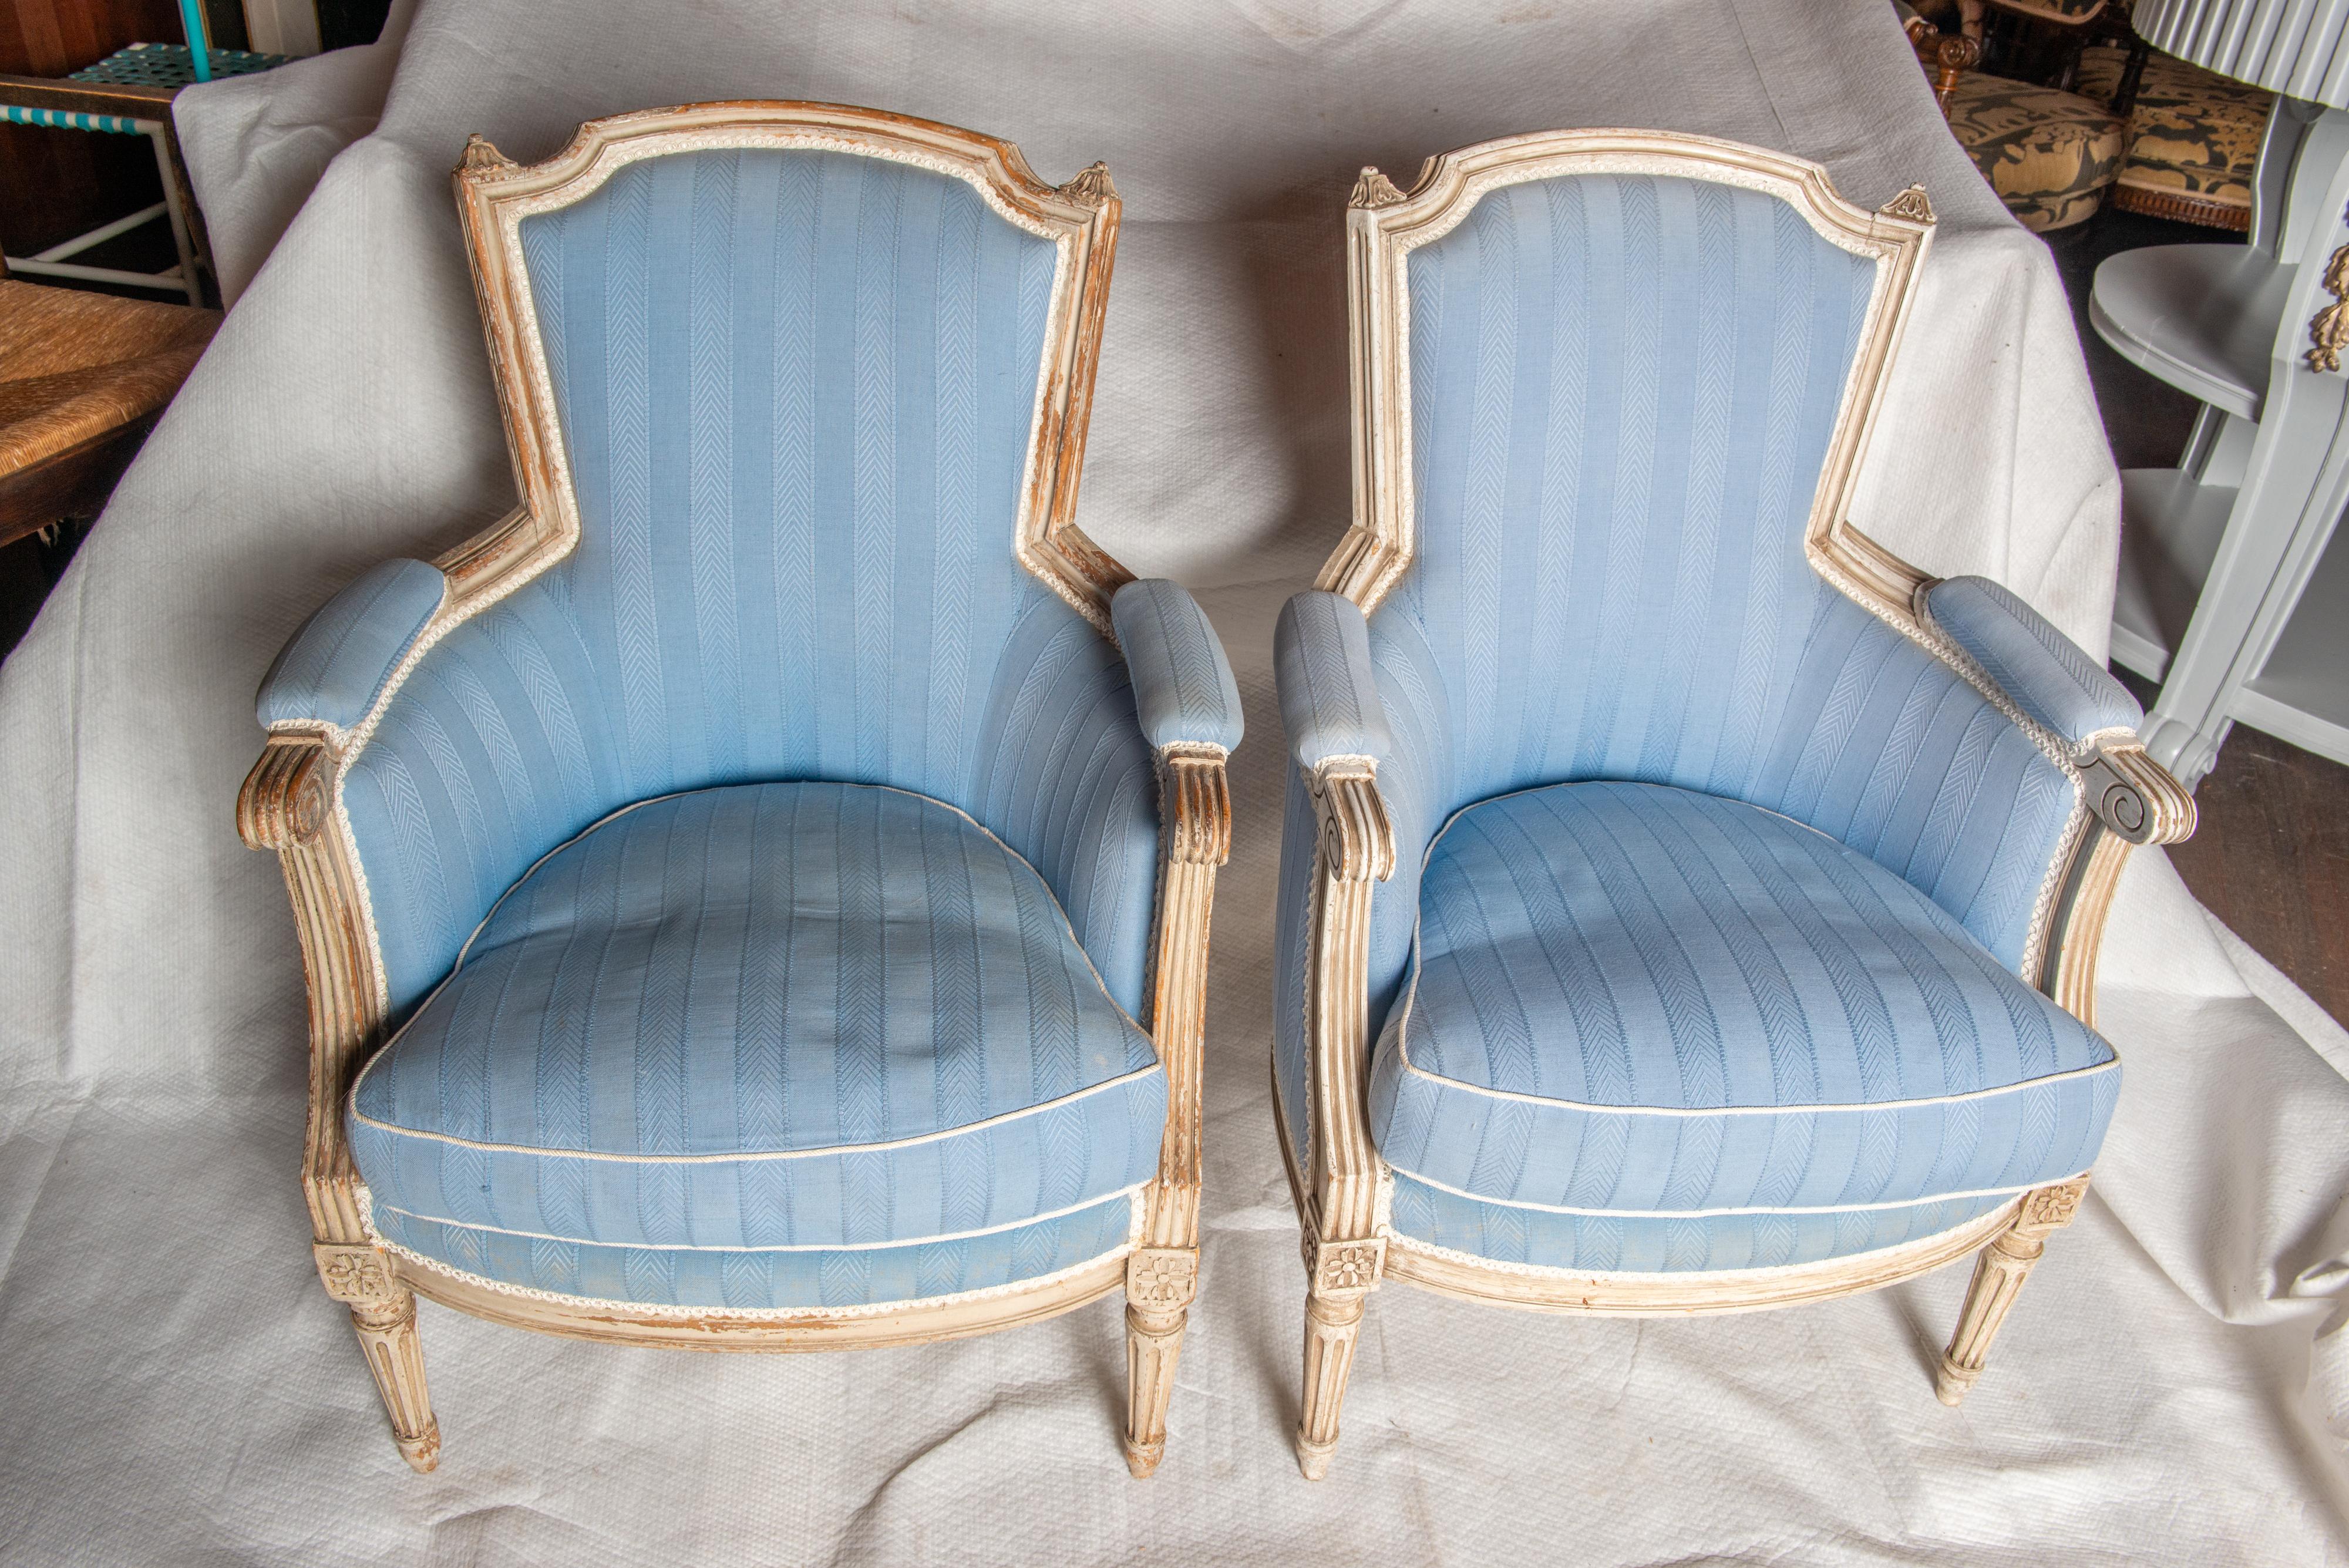 Une exquise paire de bergères en céramique de style Louis XVI attribuée à la Maison Jansen 
dans une sellerie bleue immaculée. Des beautés classiques.